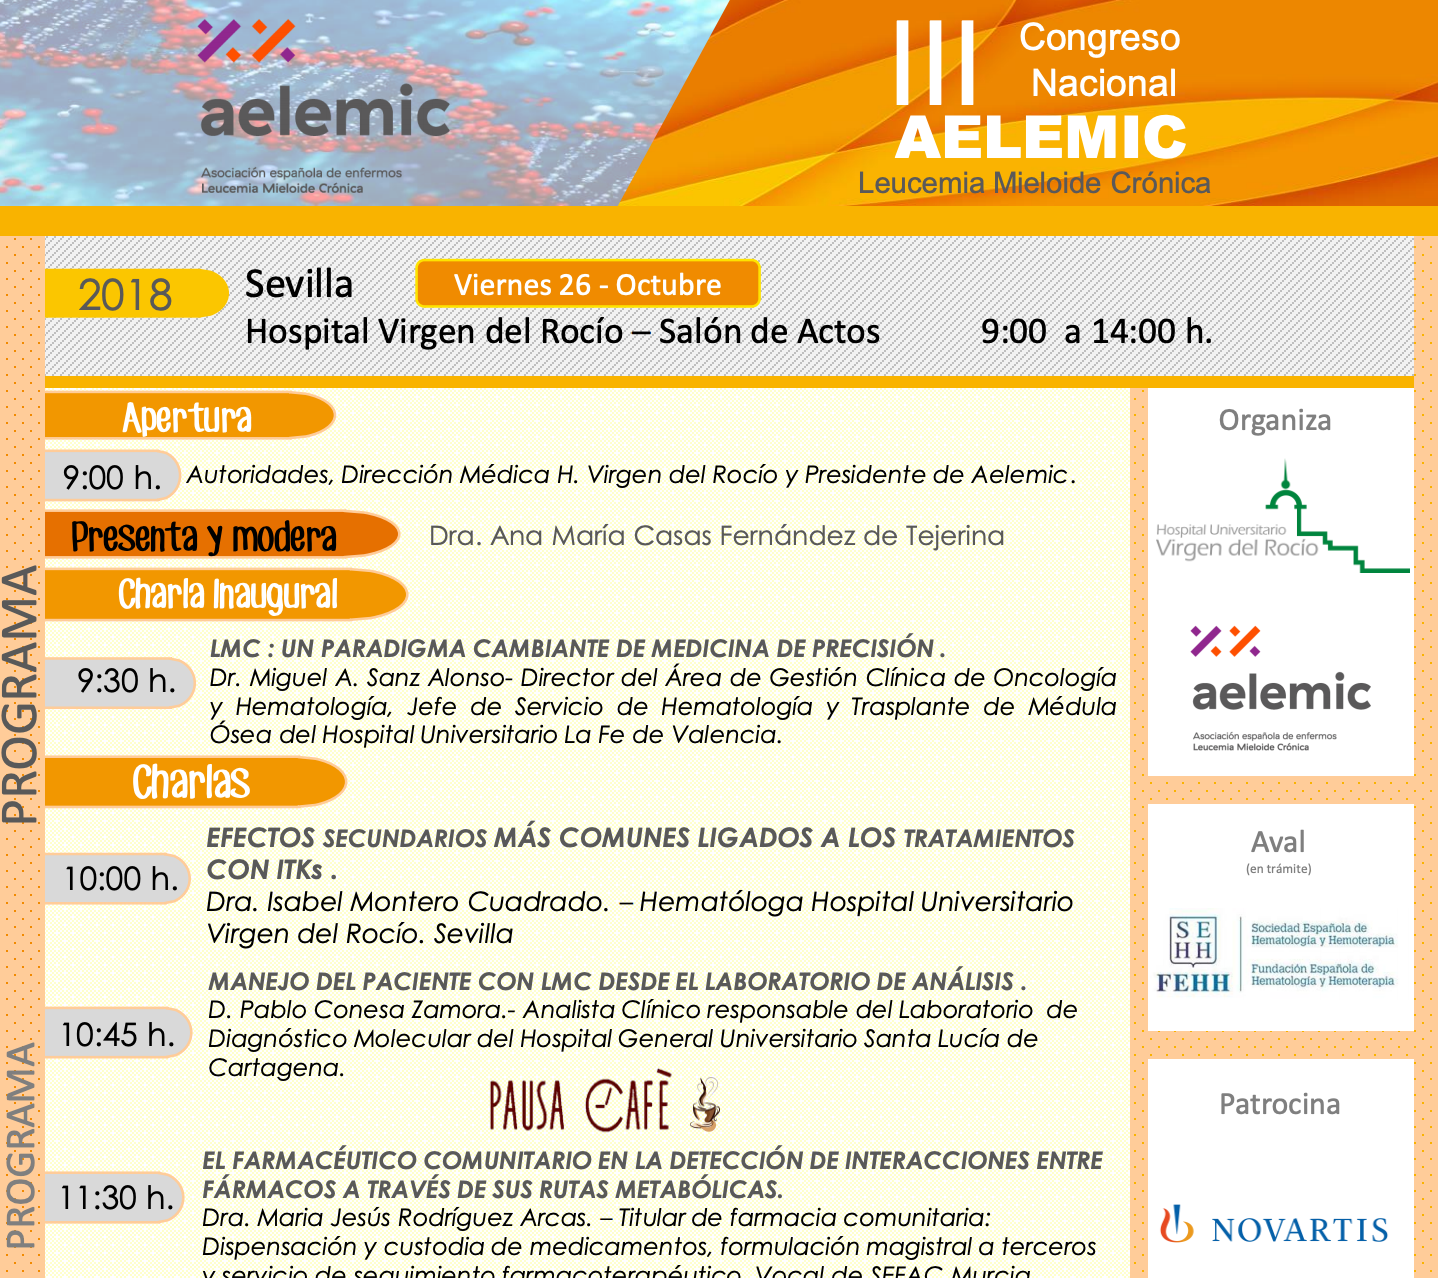 III Congreso Nacional Leucemia Mieloide Crónica Aelemic 2018 en Sevilla